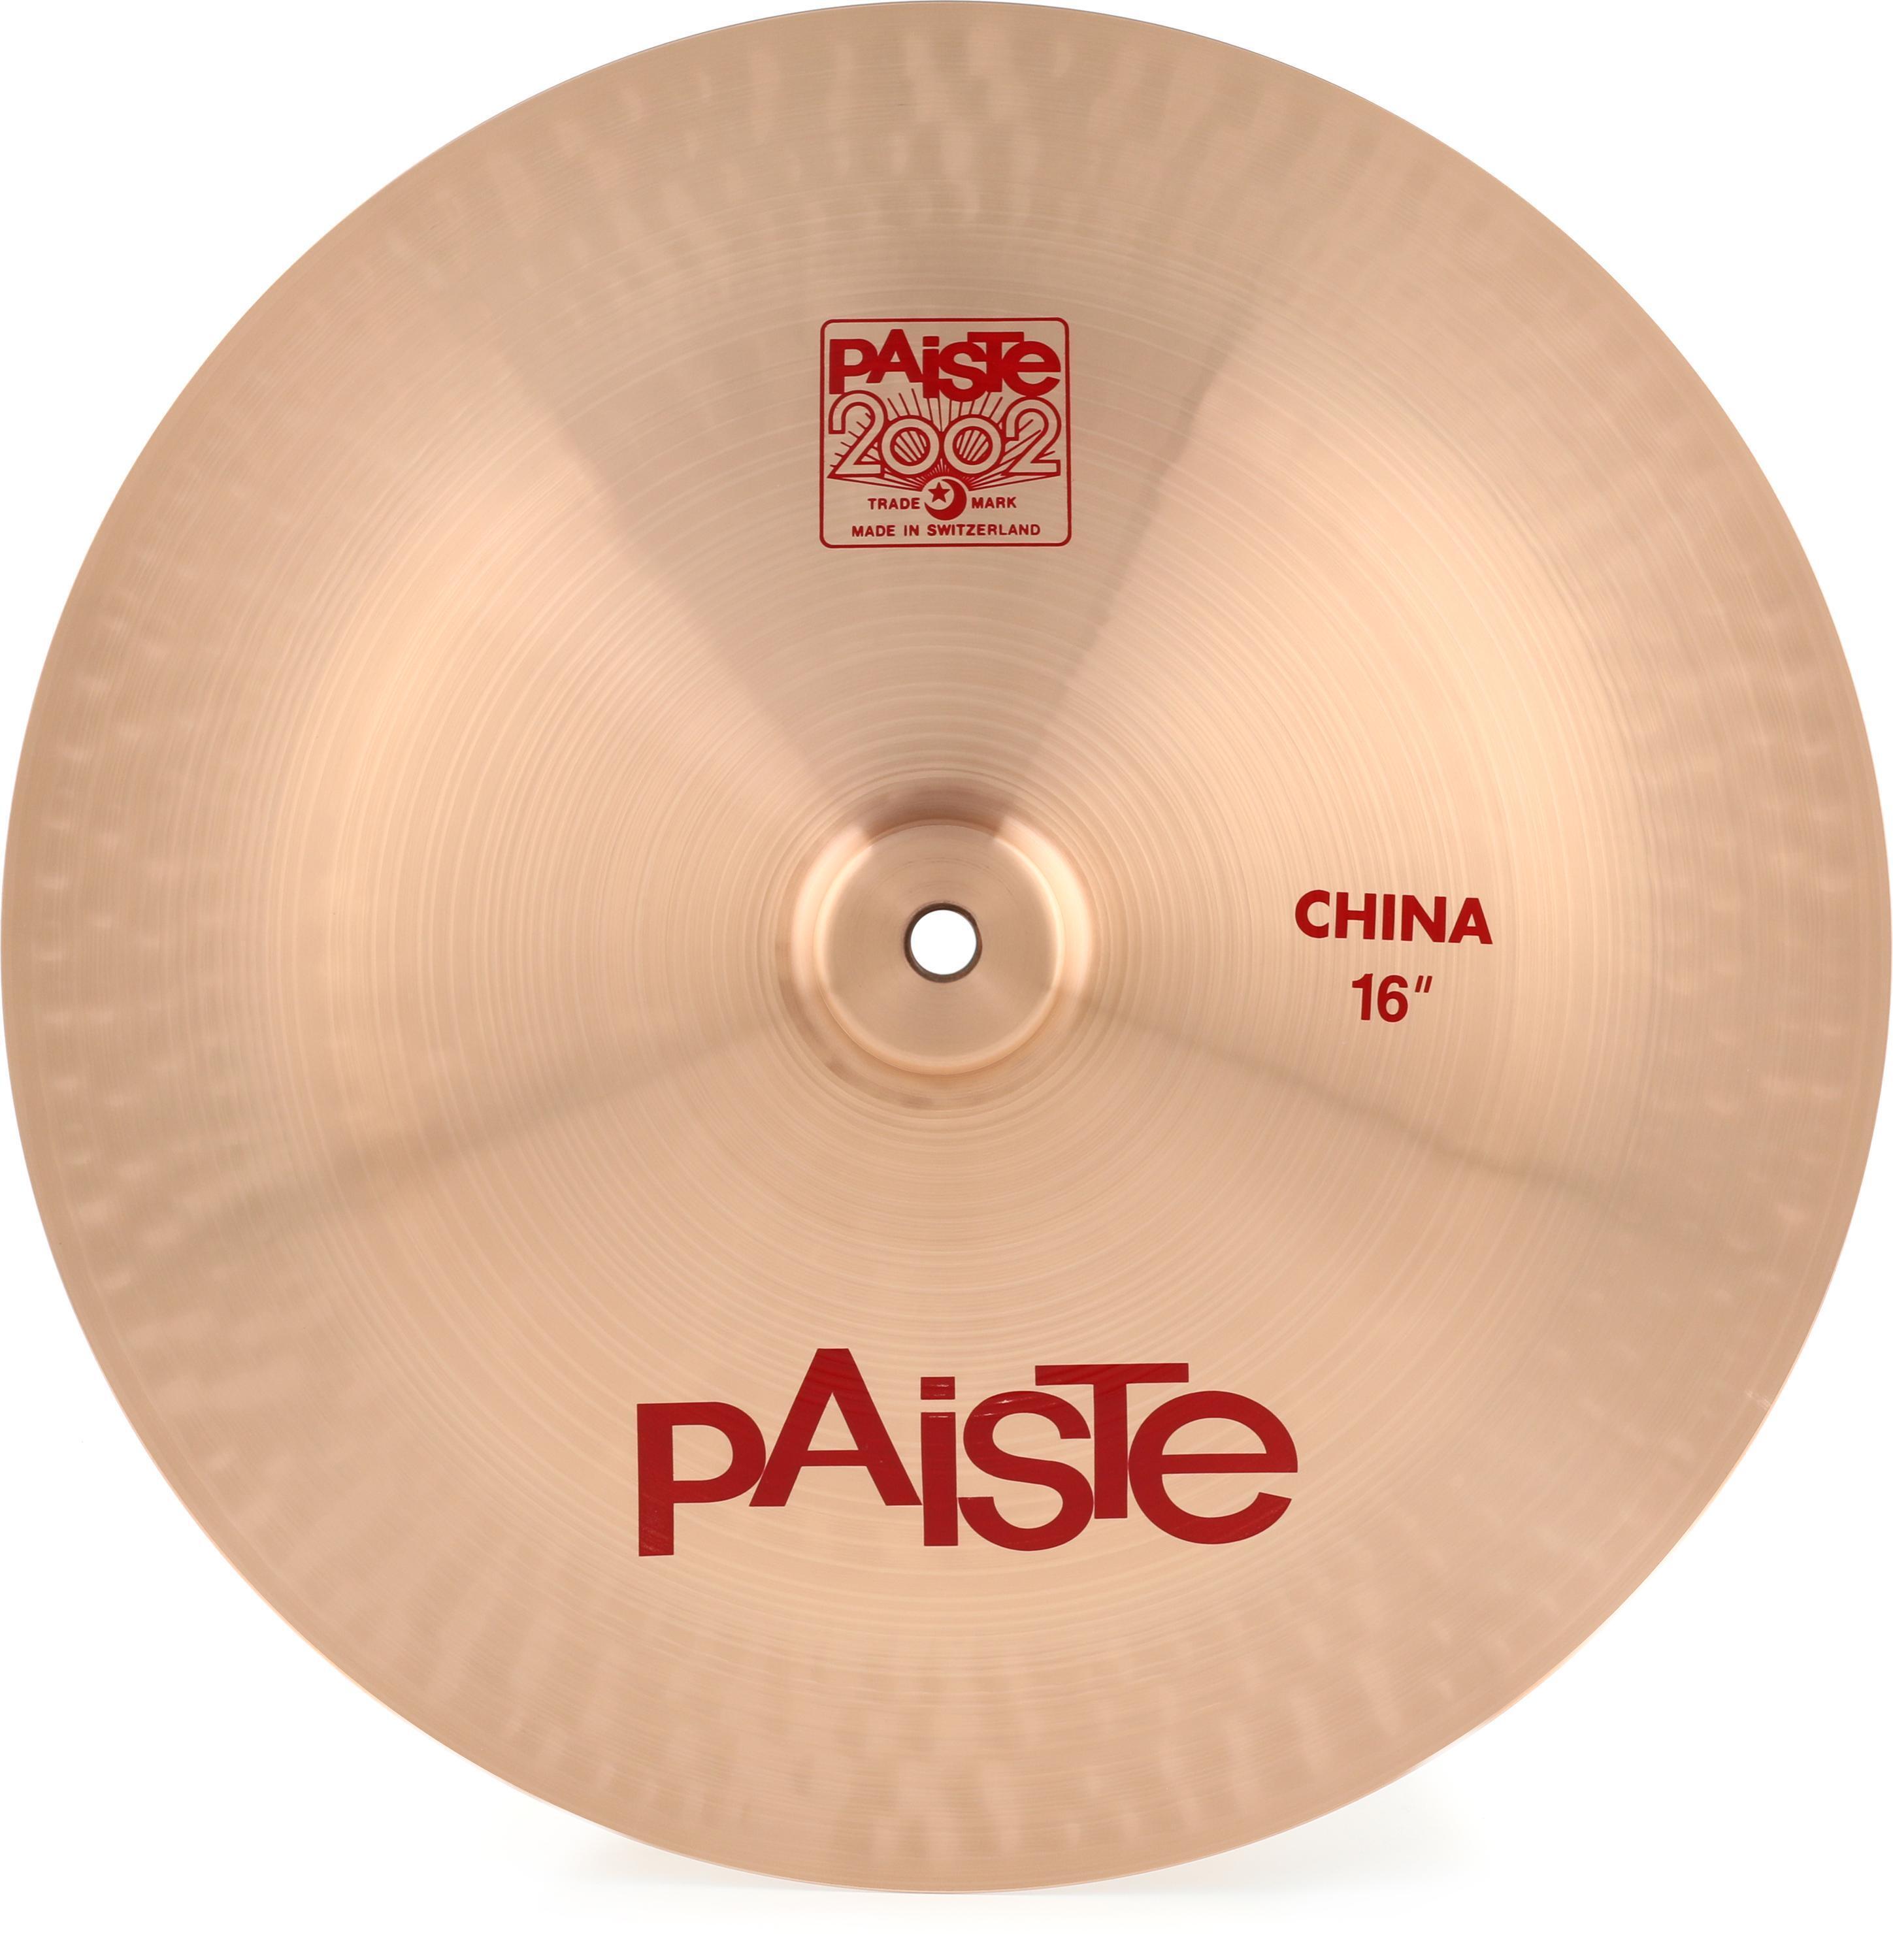 Paiste 16 inch 2002 China Type Cymbal